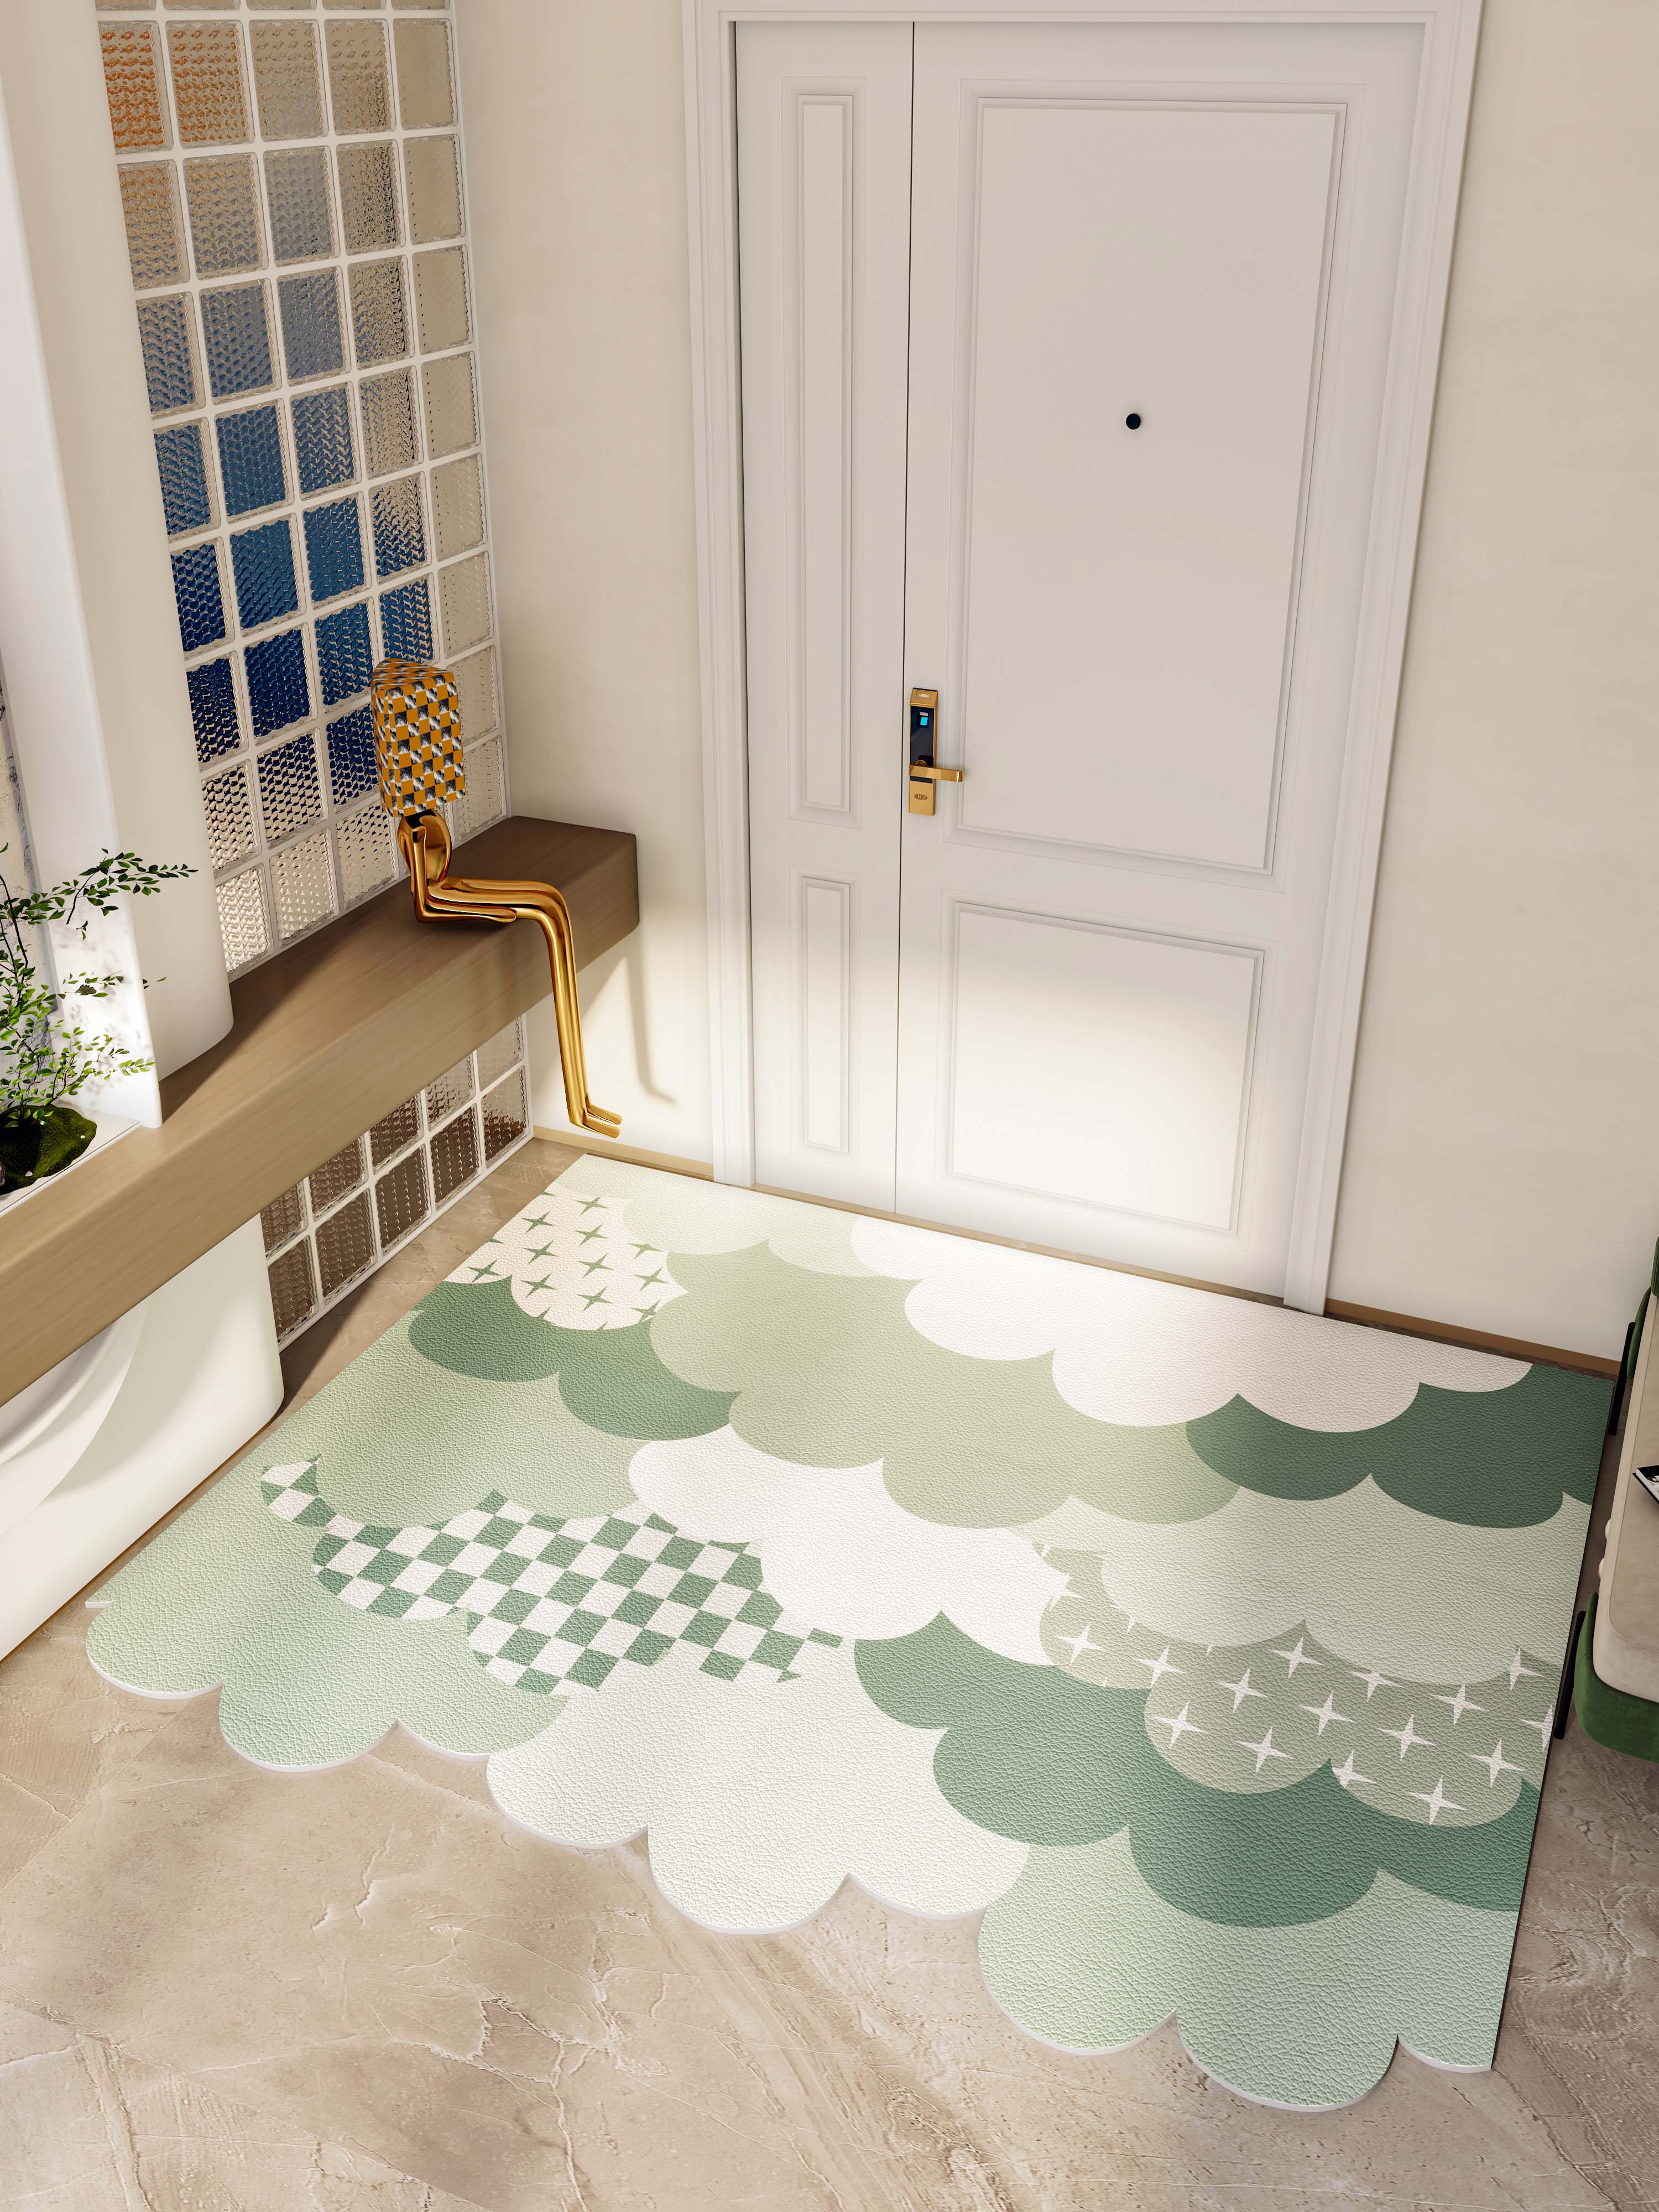 居家玄關地墊 簡約現代風格 門廳地毯 皮革材質 可擦免洗 腳踏墊